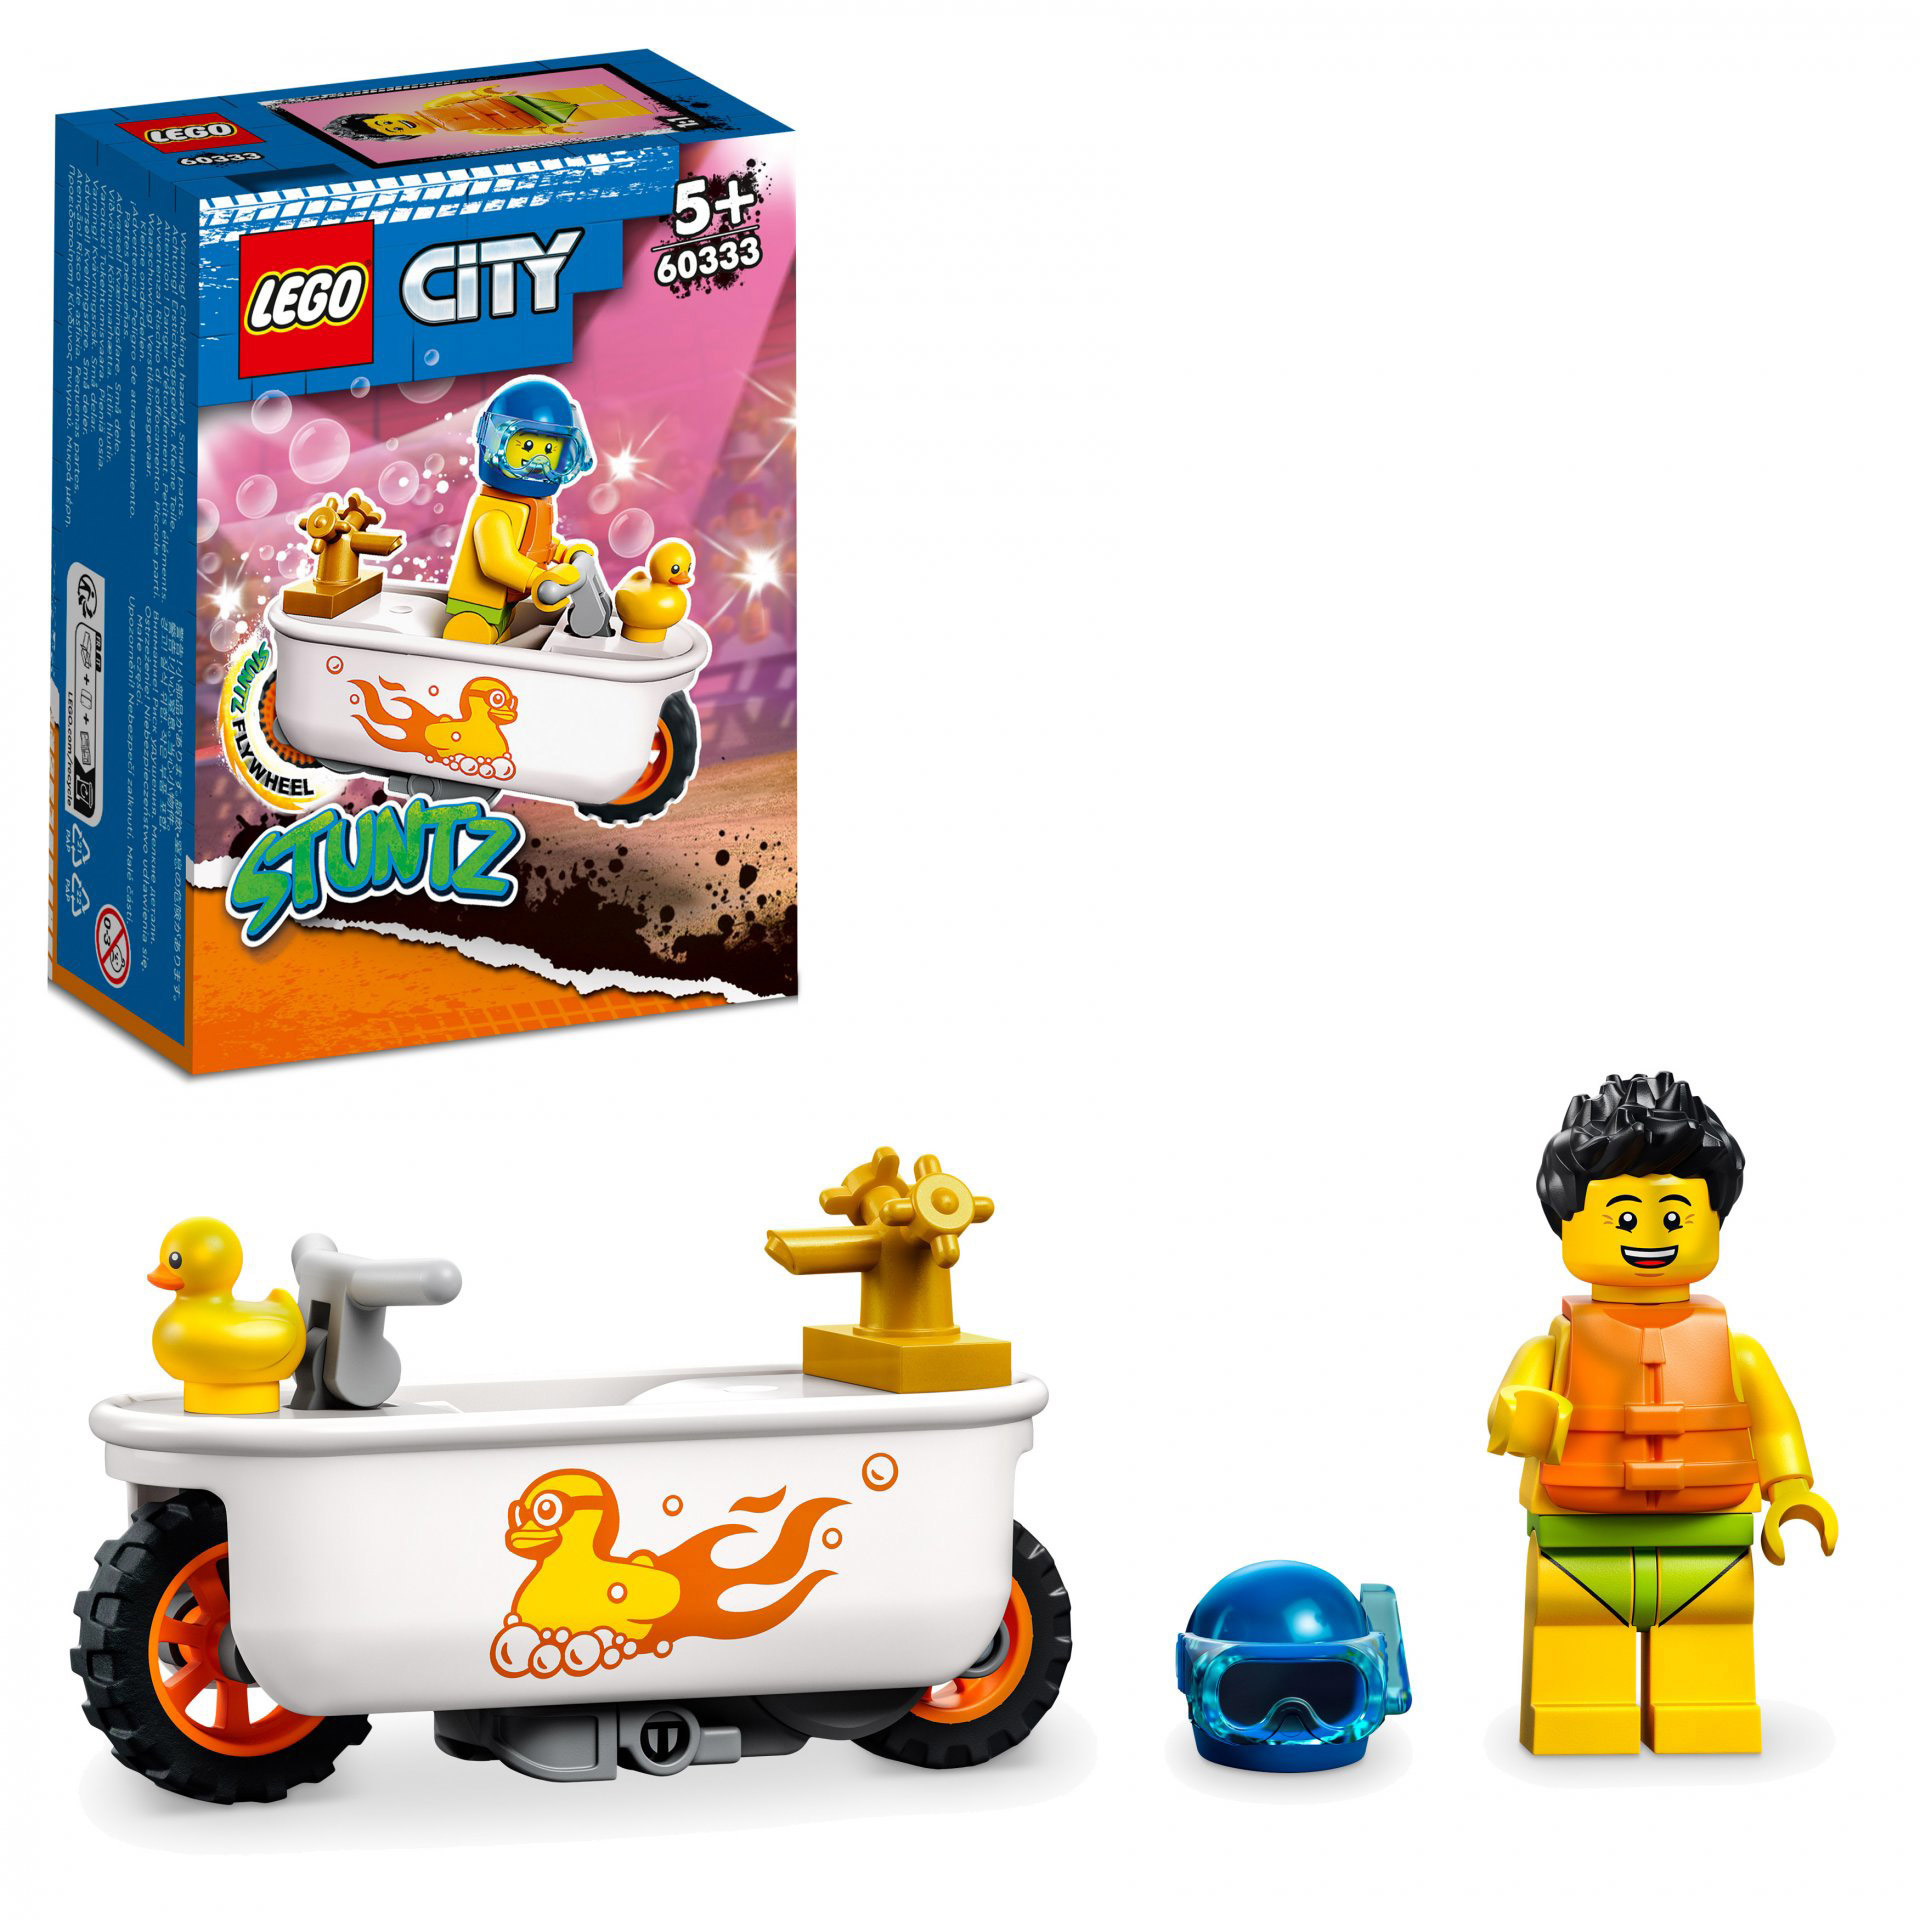 LEGO City Stuntz Stunt Bike Vasca da Bagno, Moto Giocattolo Carica e Vai con Min 60333, , large